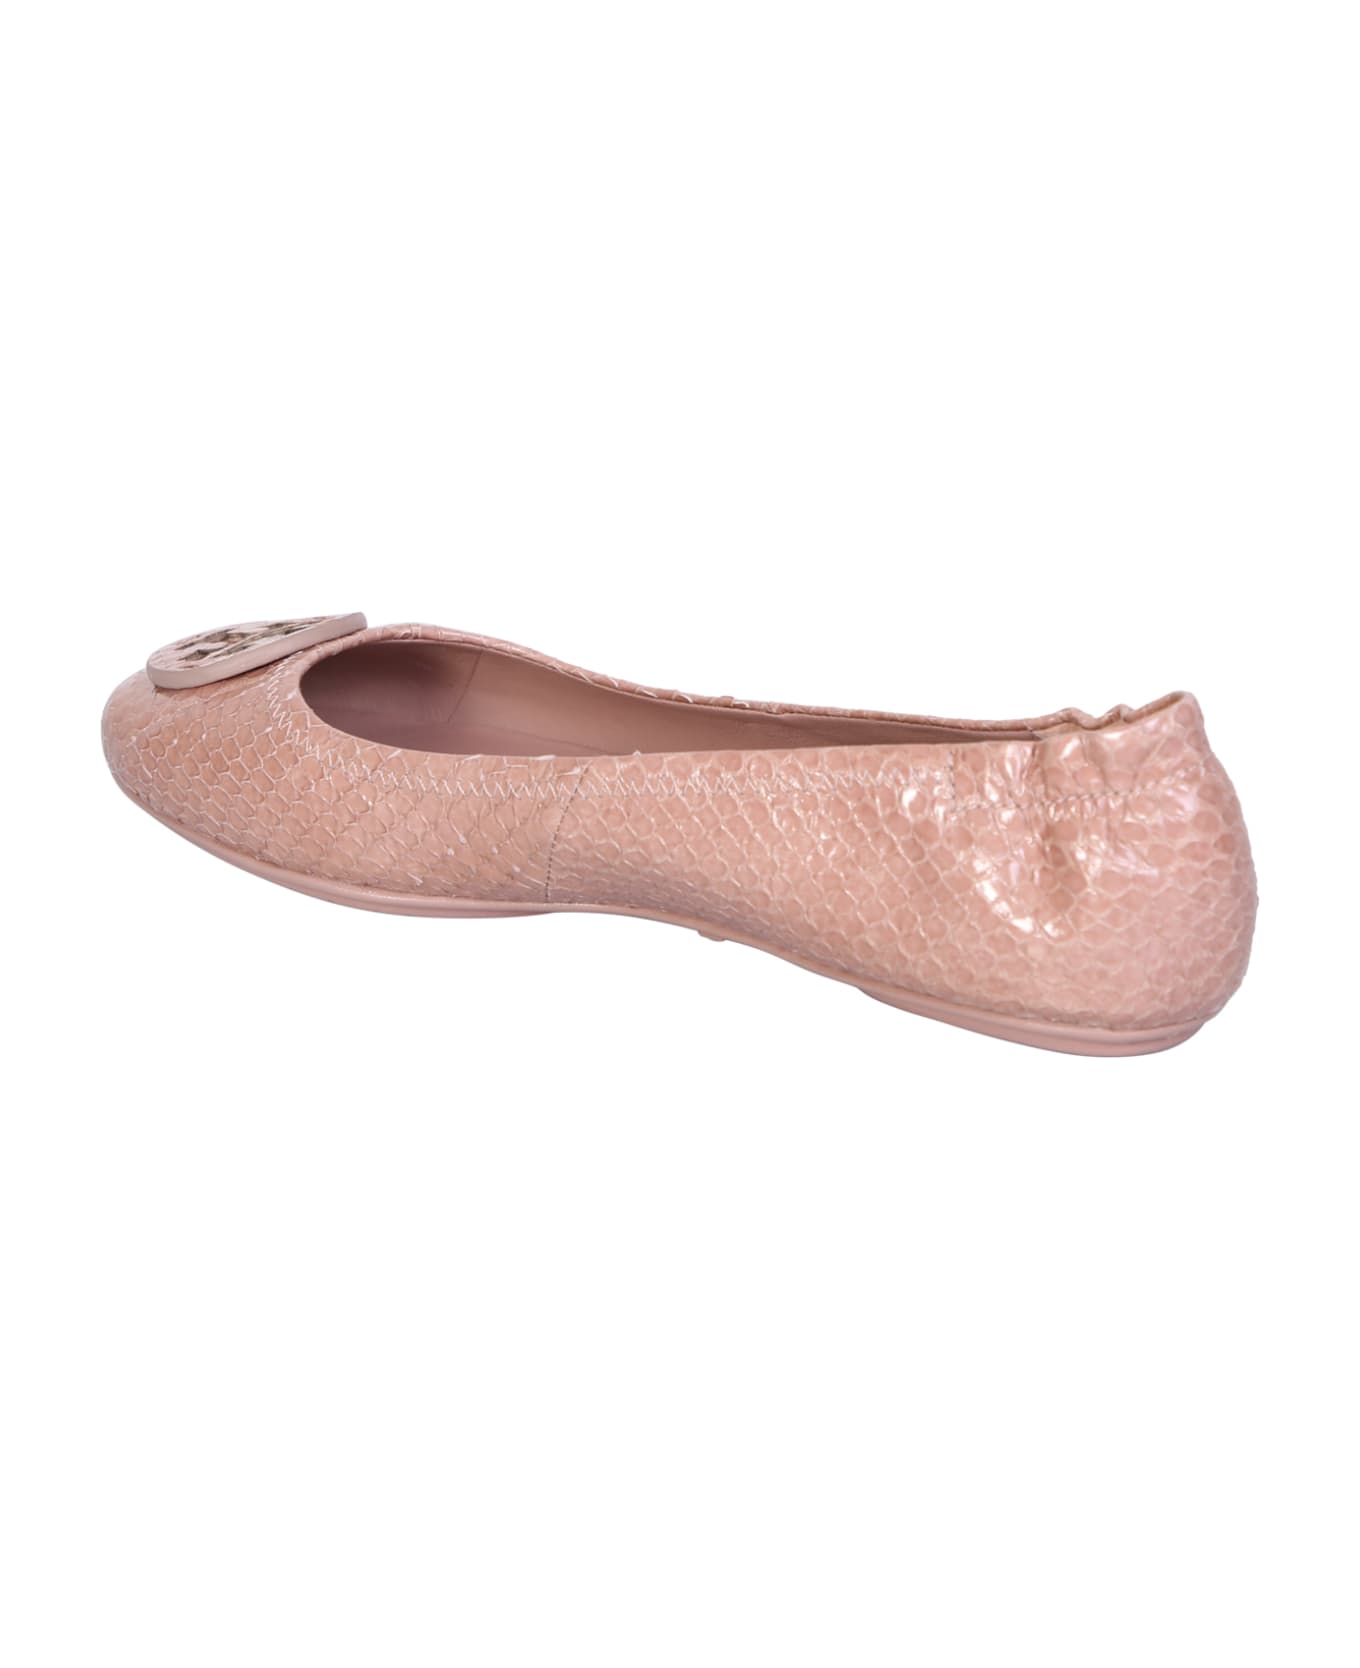 Tory Burch Minnie Travel Ballerina - Pink フラットシューズ